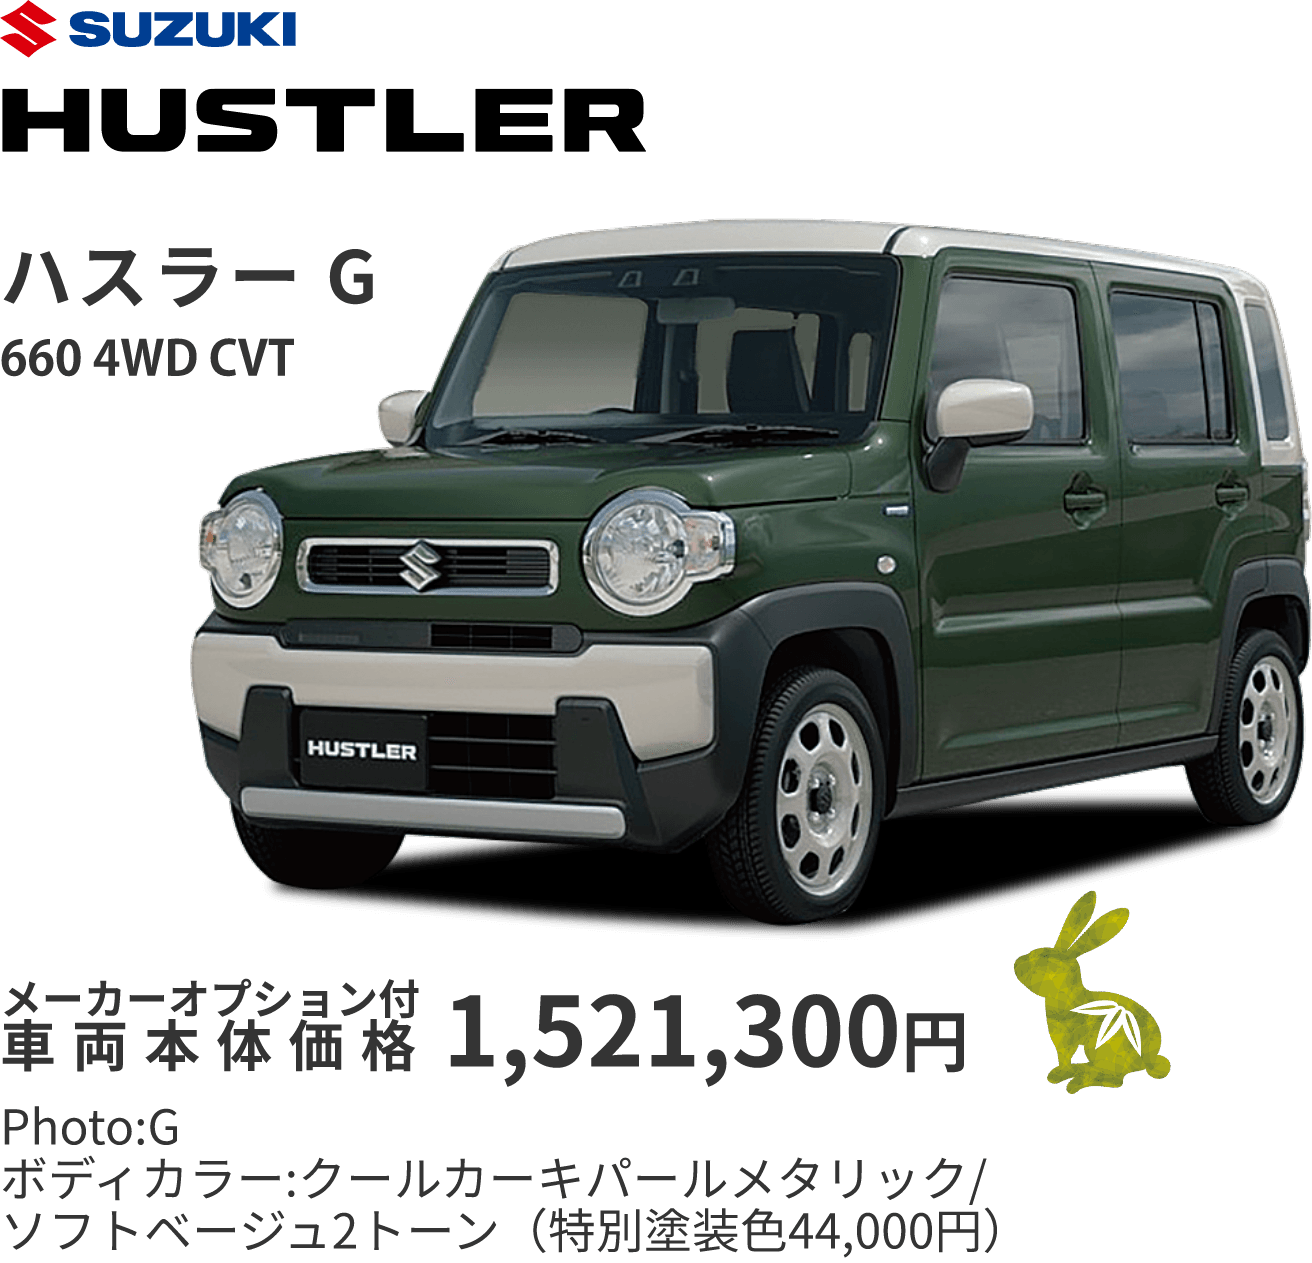 ハスラーG 660 4WD CVT メーカーオプション付 車両本体価格1,521,300円